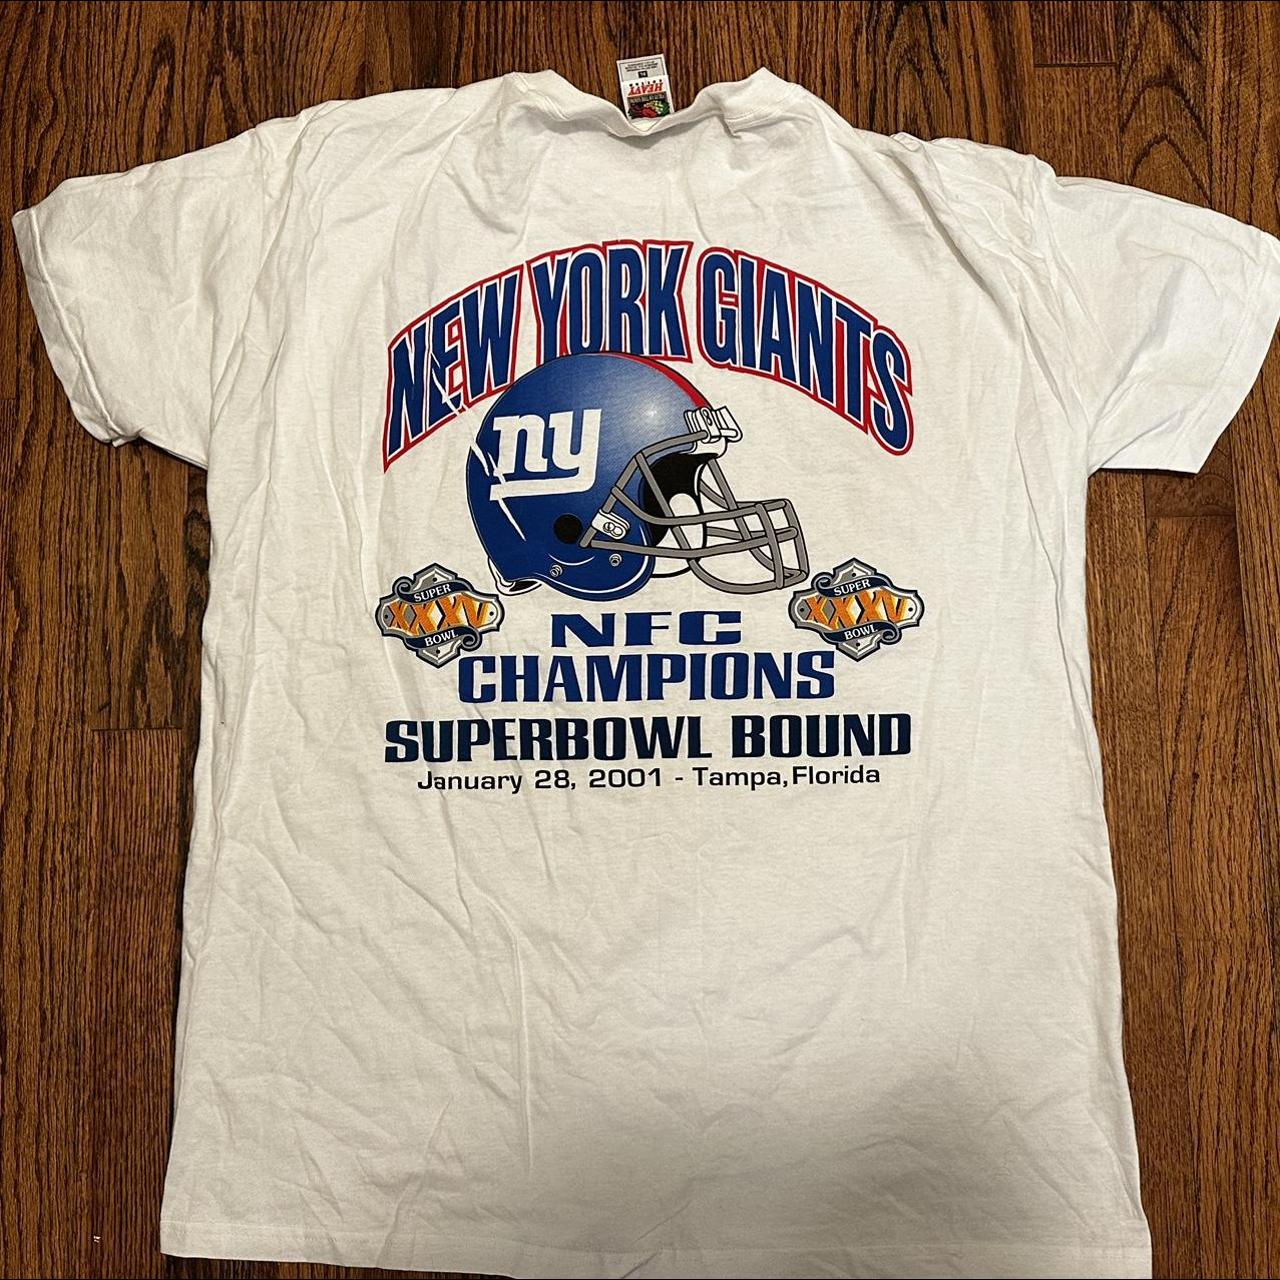 New York Yankees VS Mets Subway Series T-Shirt  - Depop